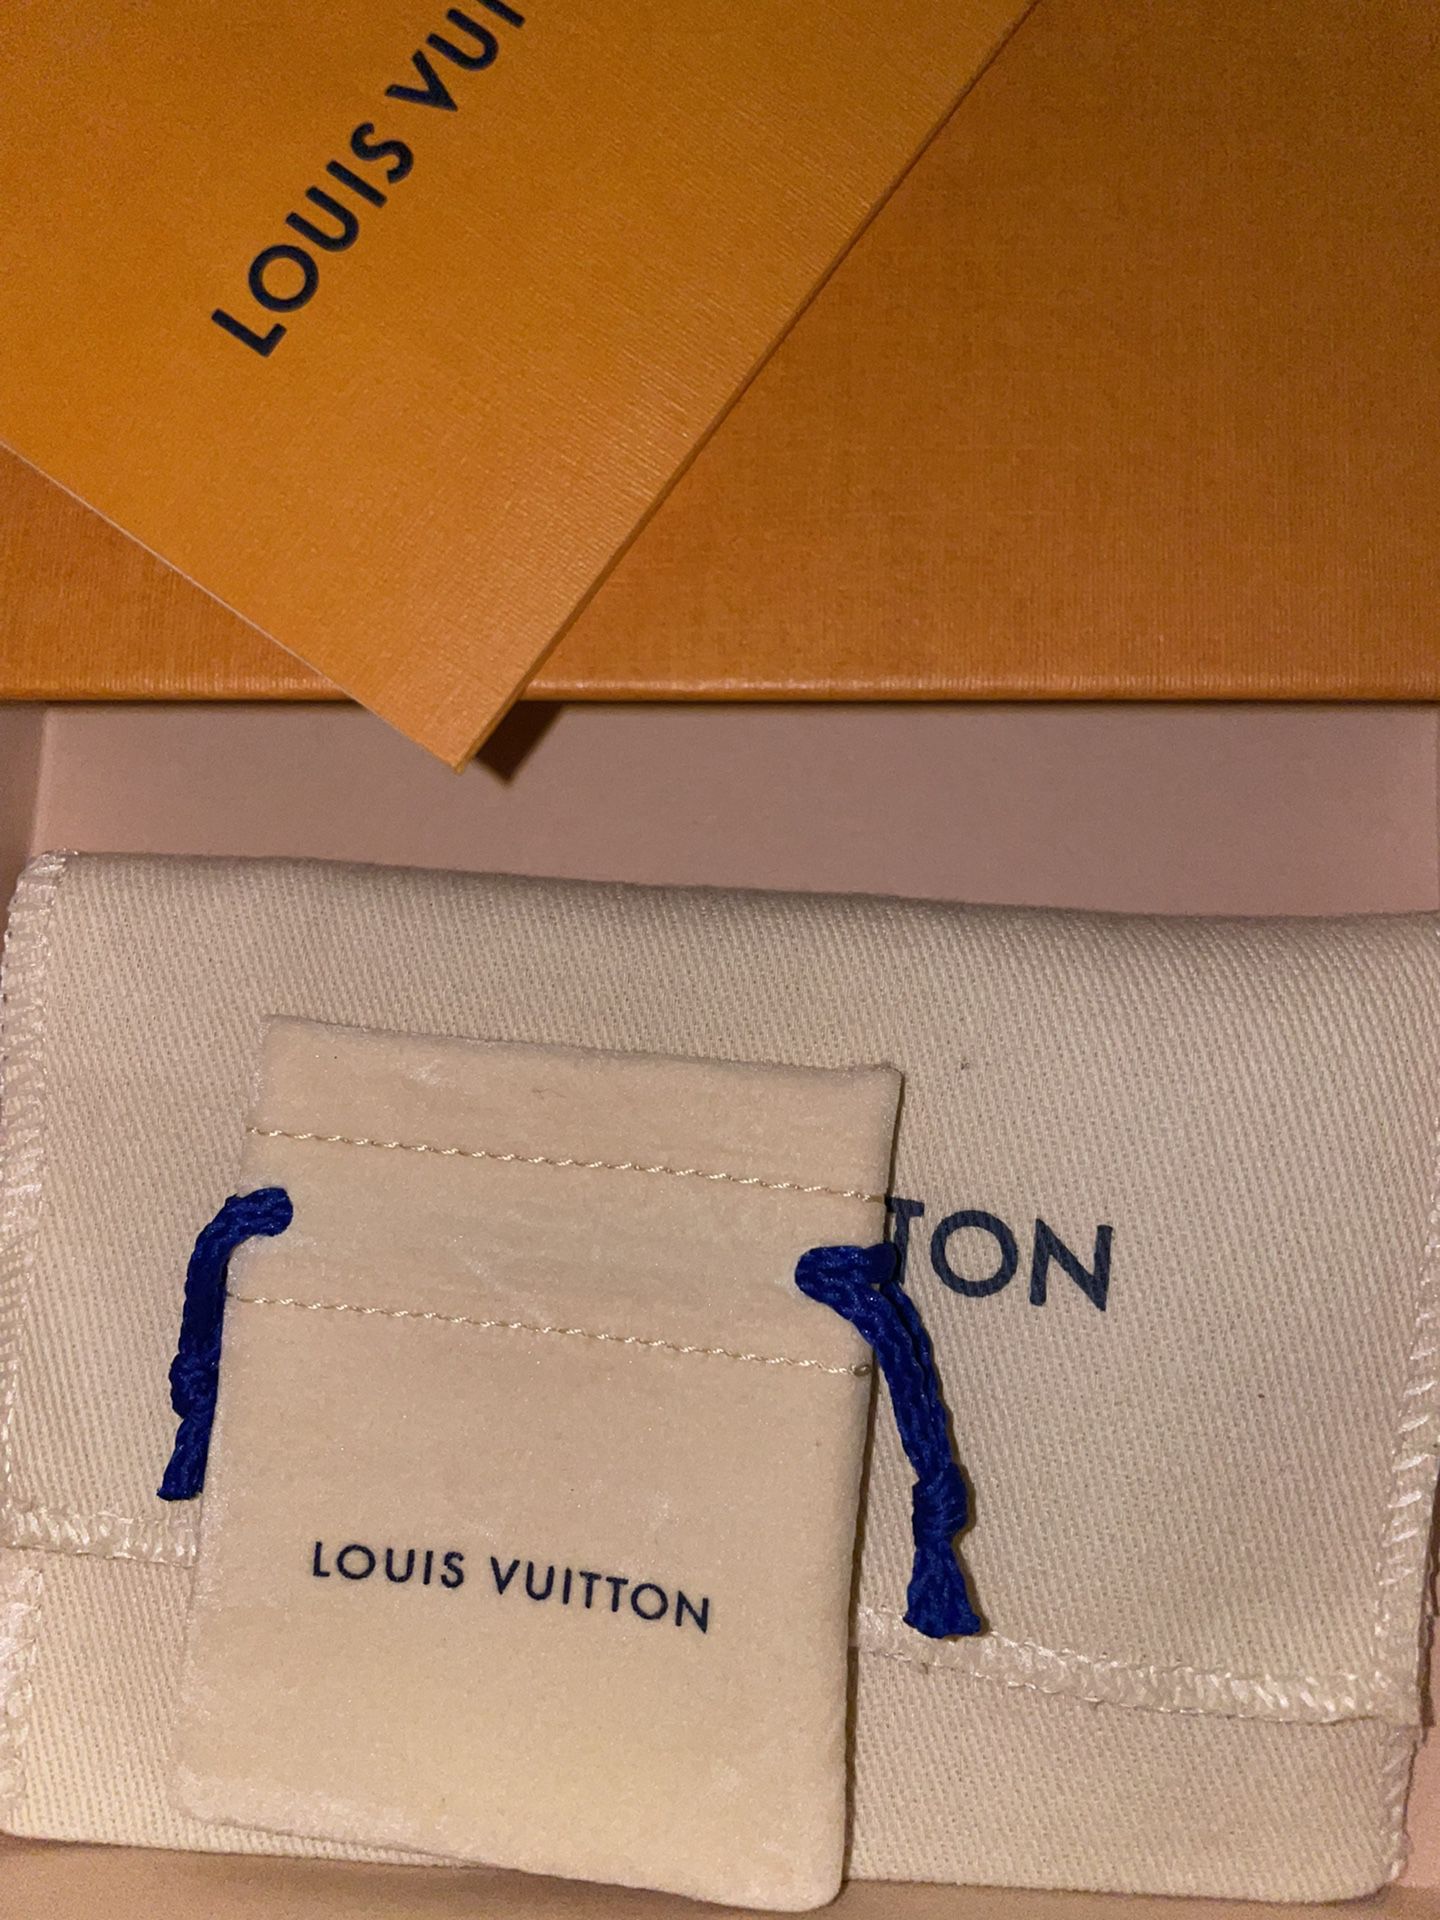 Louis Vuitton Cruiser Earrings for Sale in Newark, DE - OfferUp